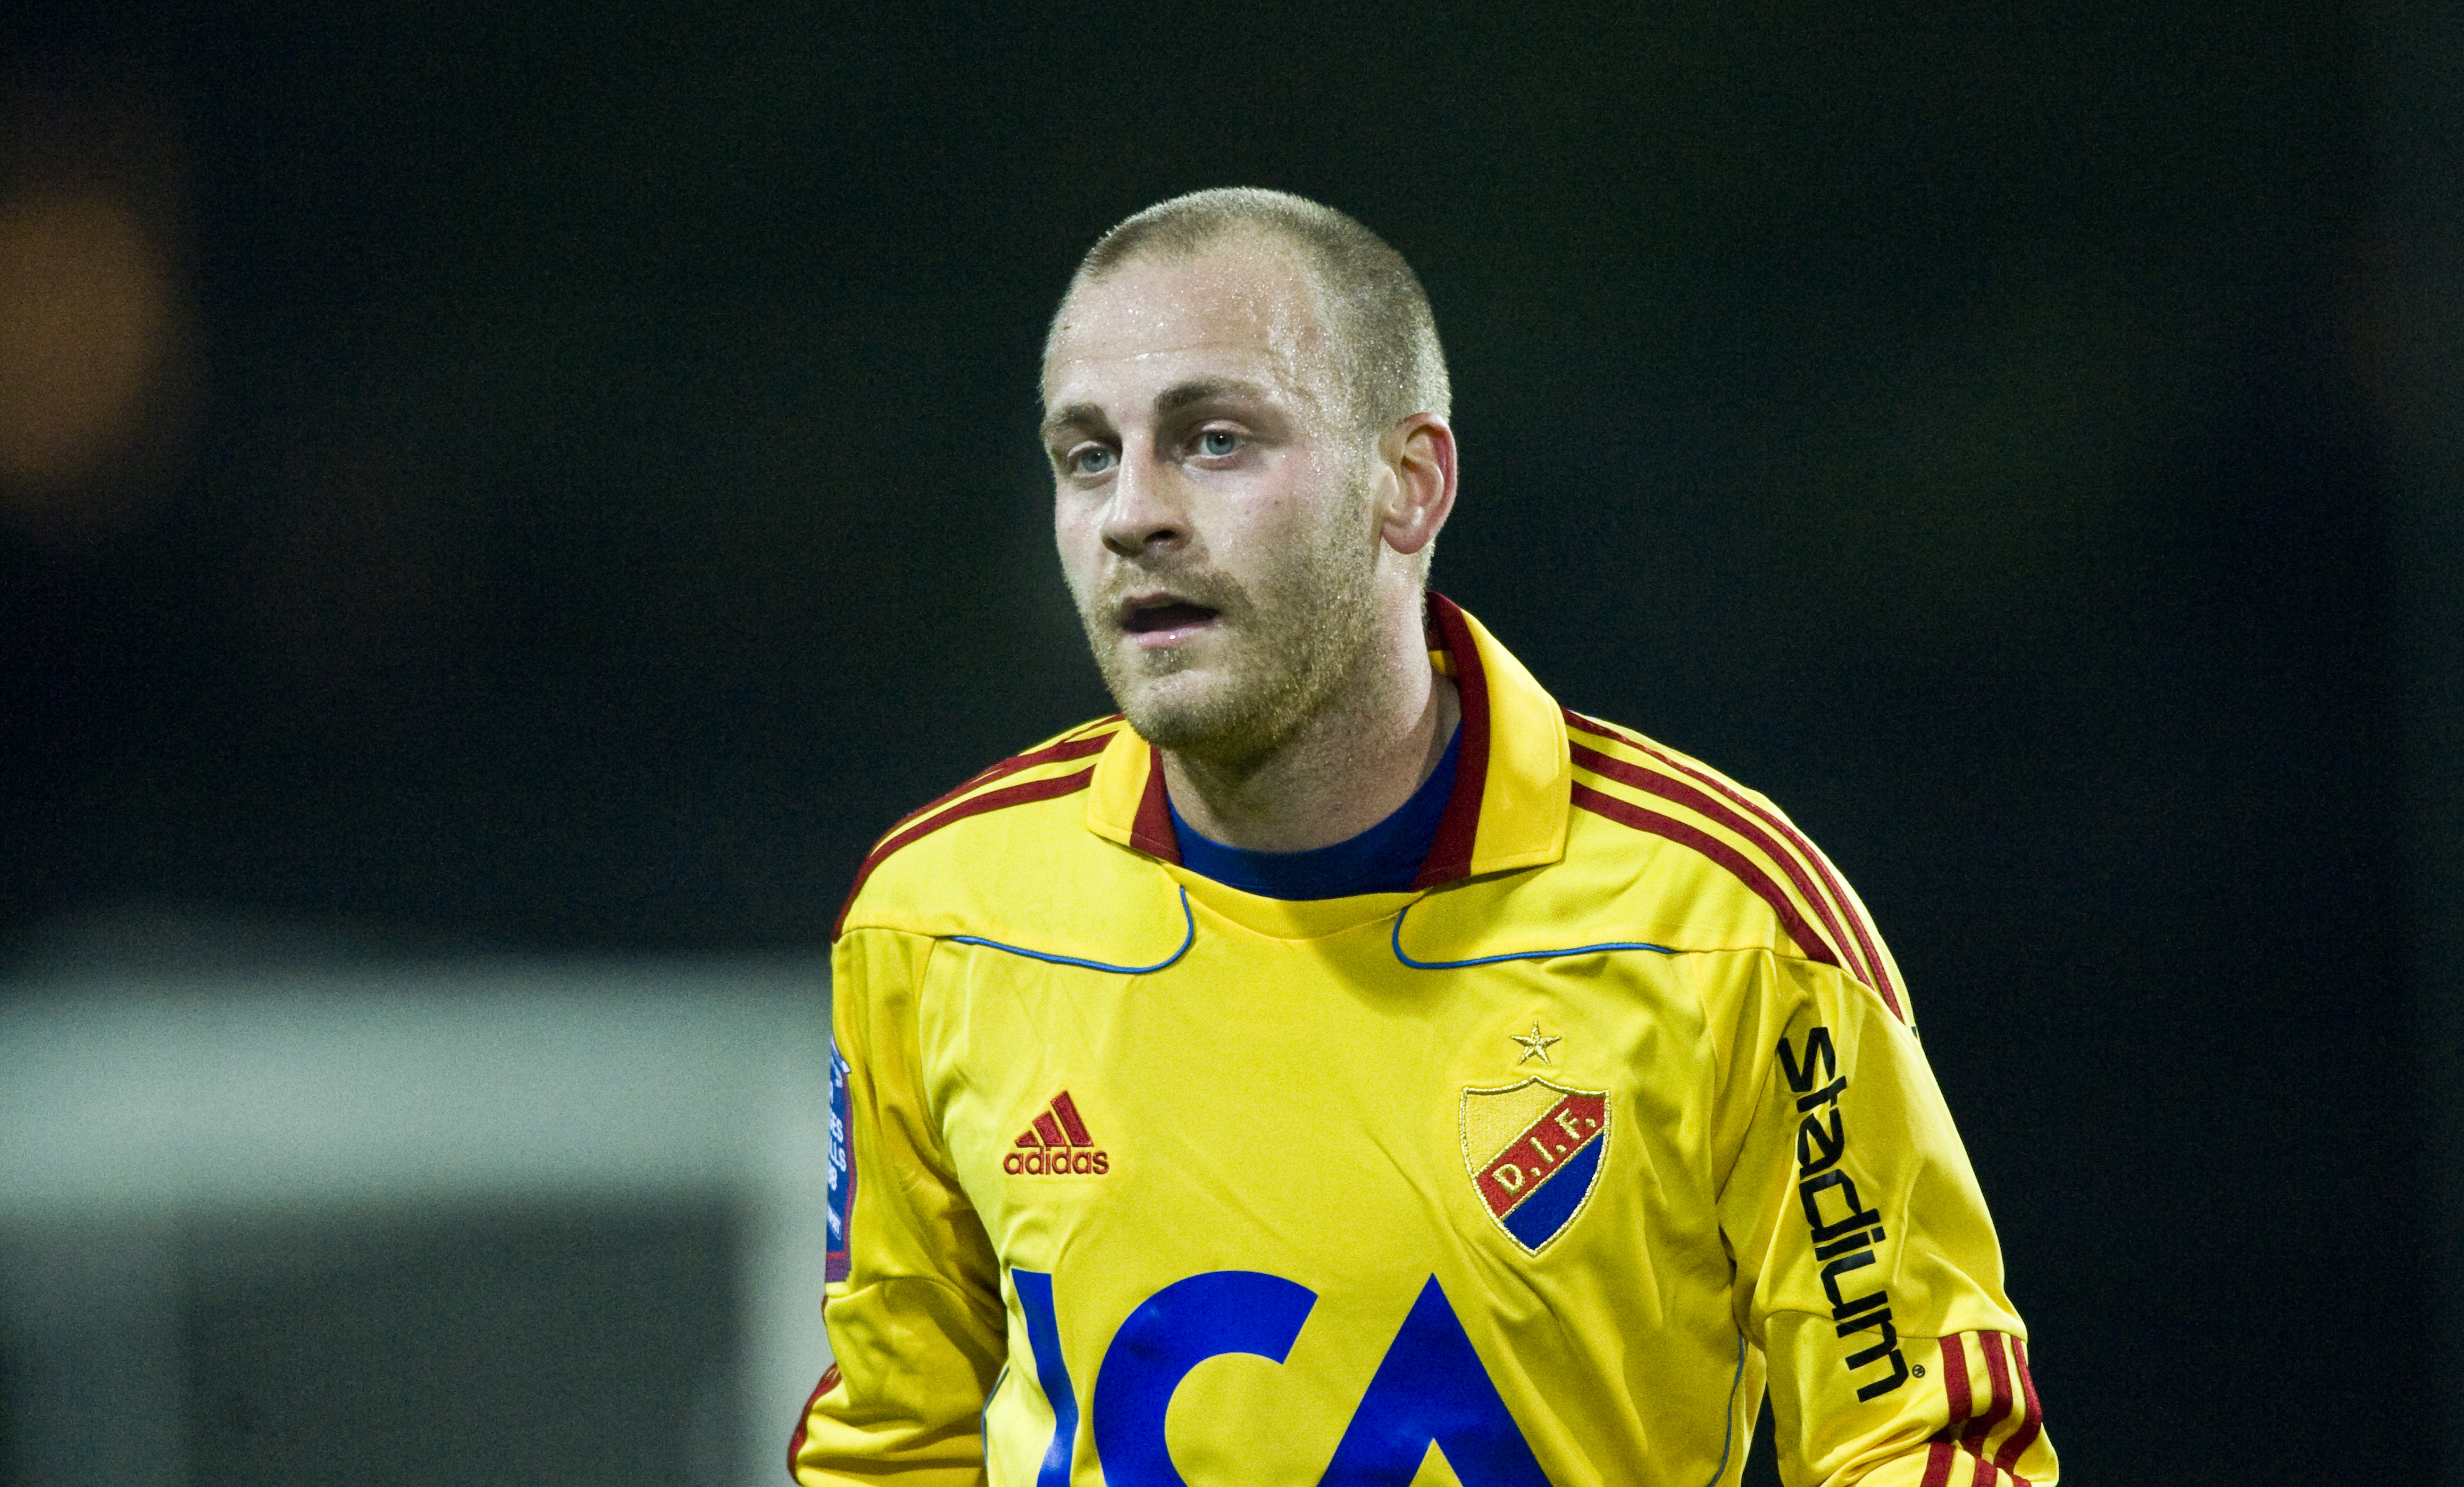 Totalt har Sjölund gjort 27 mål och 30 assist på 205 matcher.